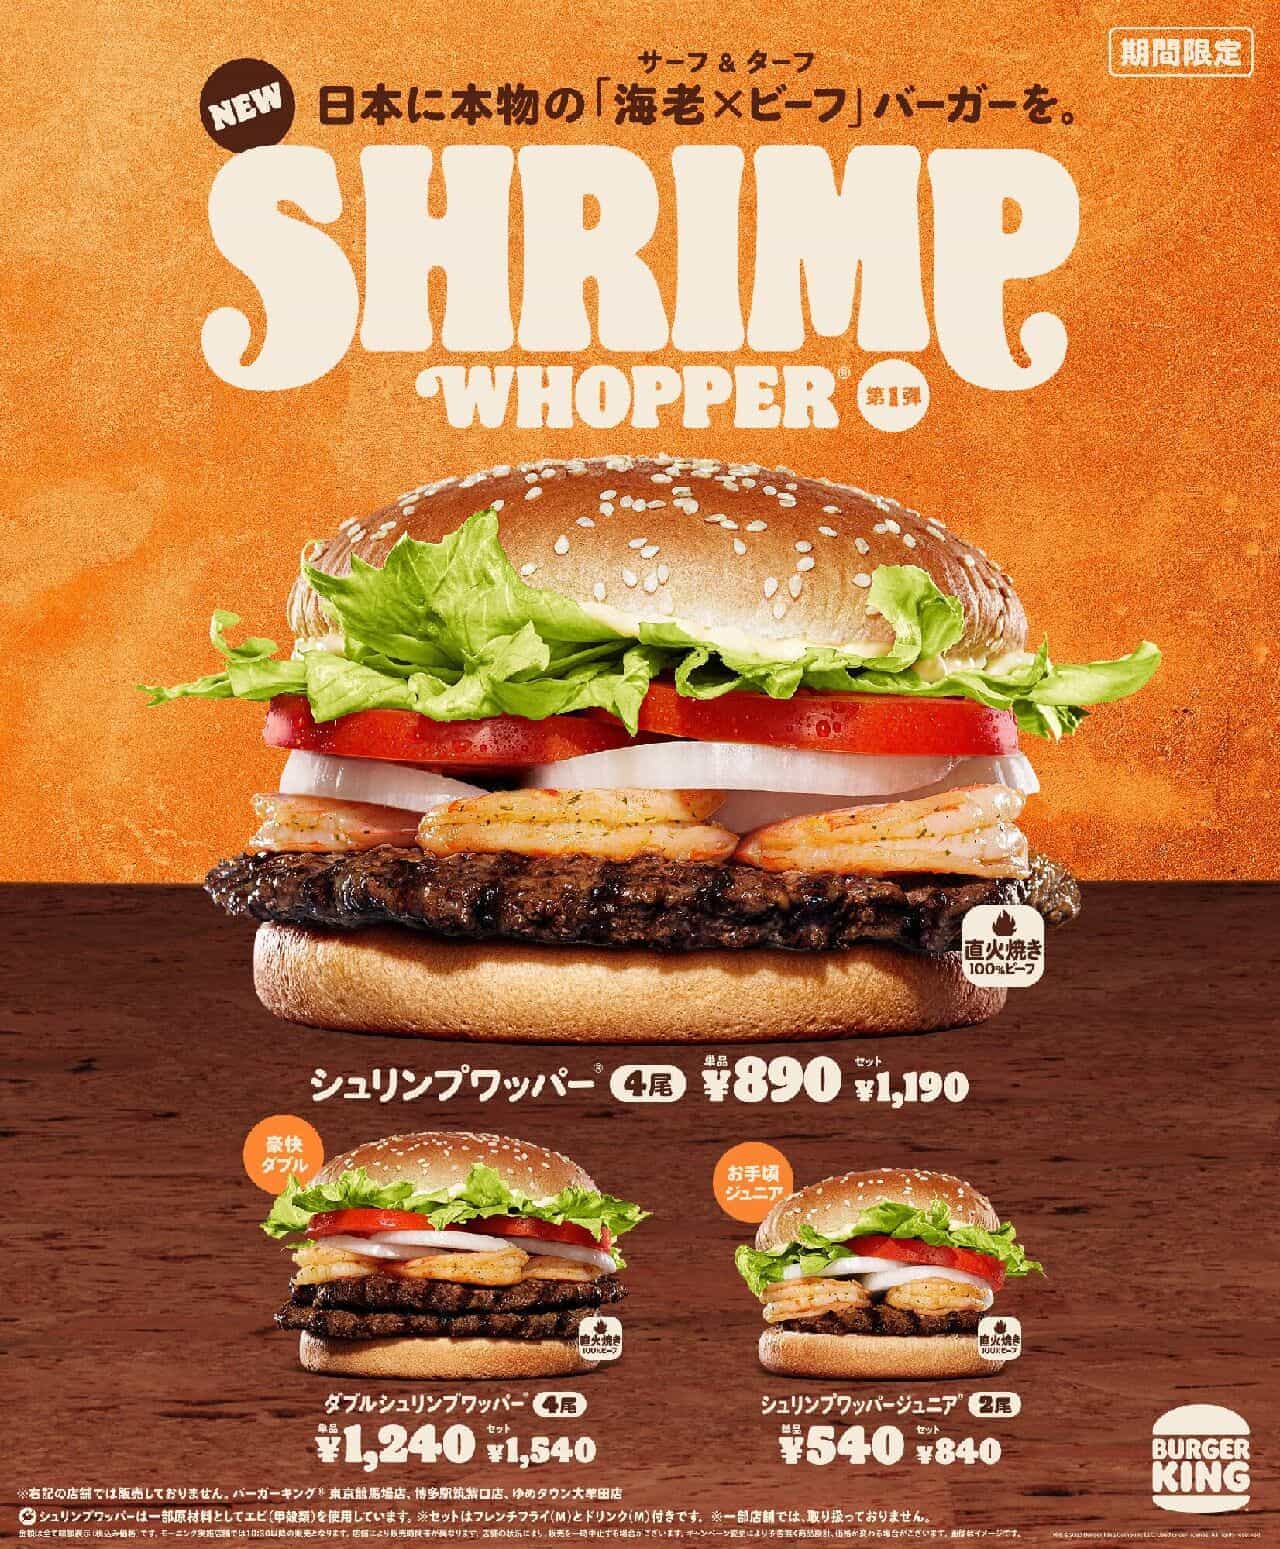 Burger King "Shrimp Whopper", "Double Shrimp Whopper", "Shrimp Whopper Jr.